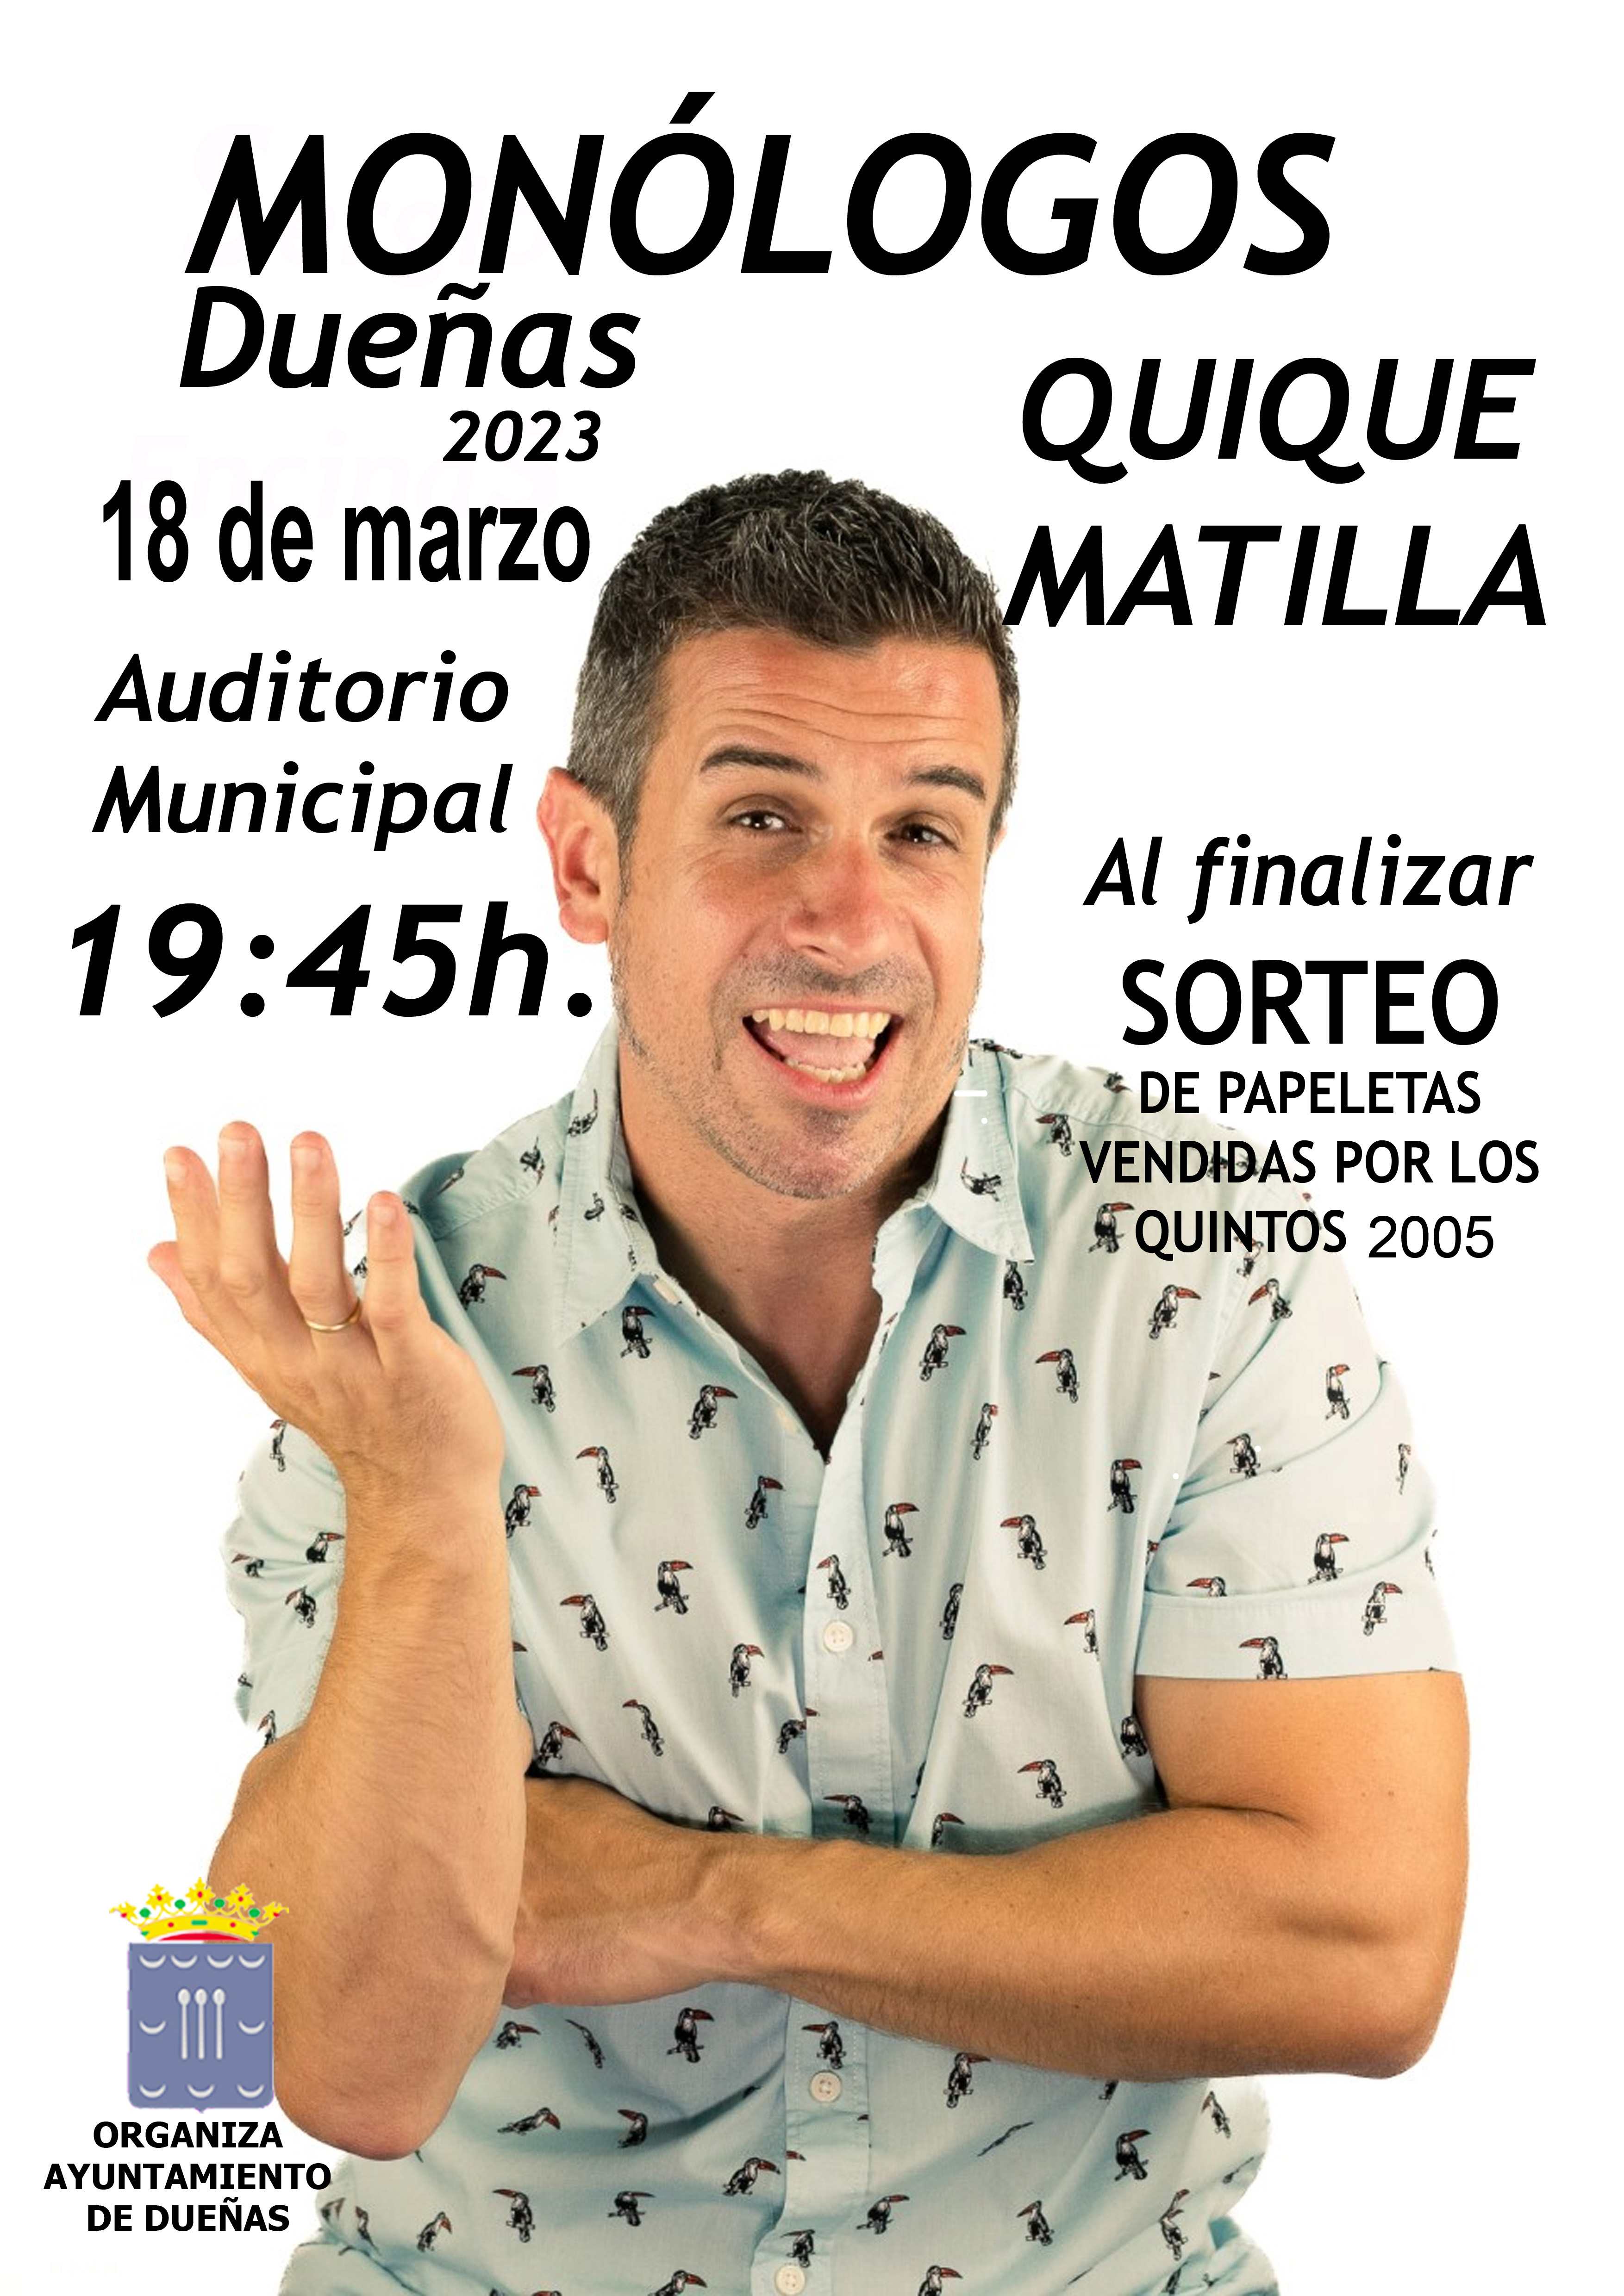 18 de marzo: Monólogos con Quique Matilla, Auditorio Municipal, 19:45h.